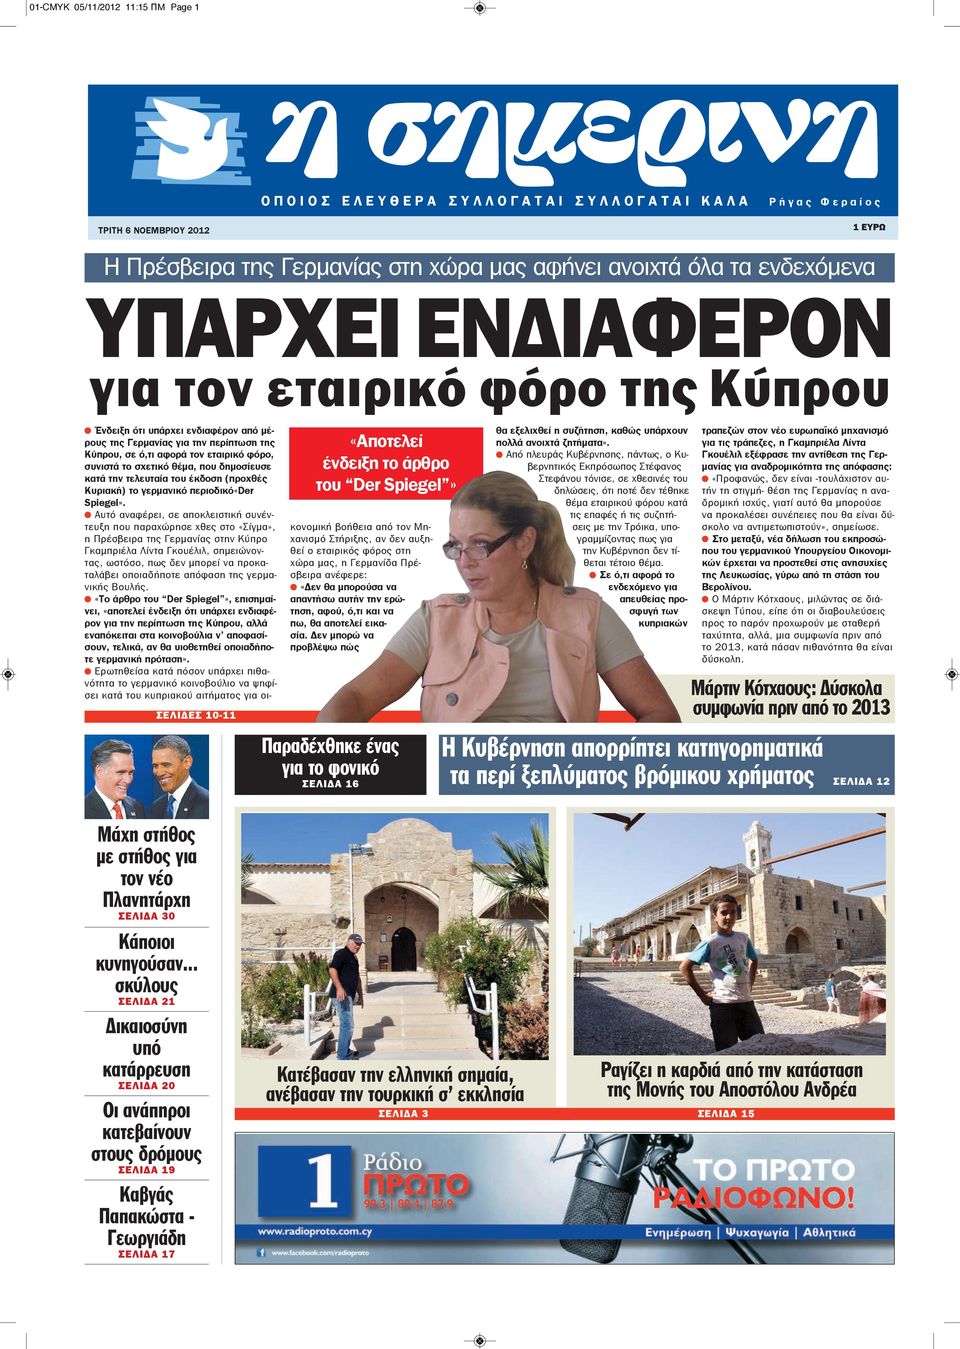 της Κύπρου, σε ό,τι αφορά τον εταιρικό φόρο, συνιστά το σχετικό θέμα, που δημοσίευσε κατά την τελευταία του έκδοση (προχθές Κυριακή) το γερμανικό περιοδικό«der Spiegel».